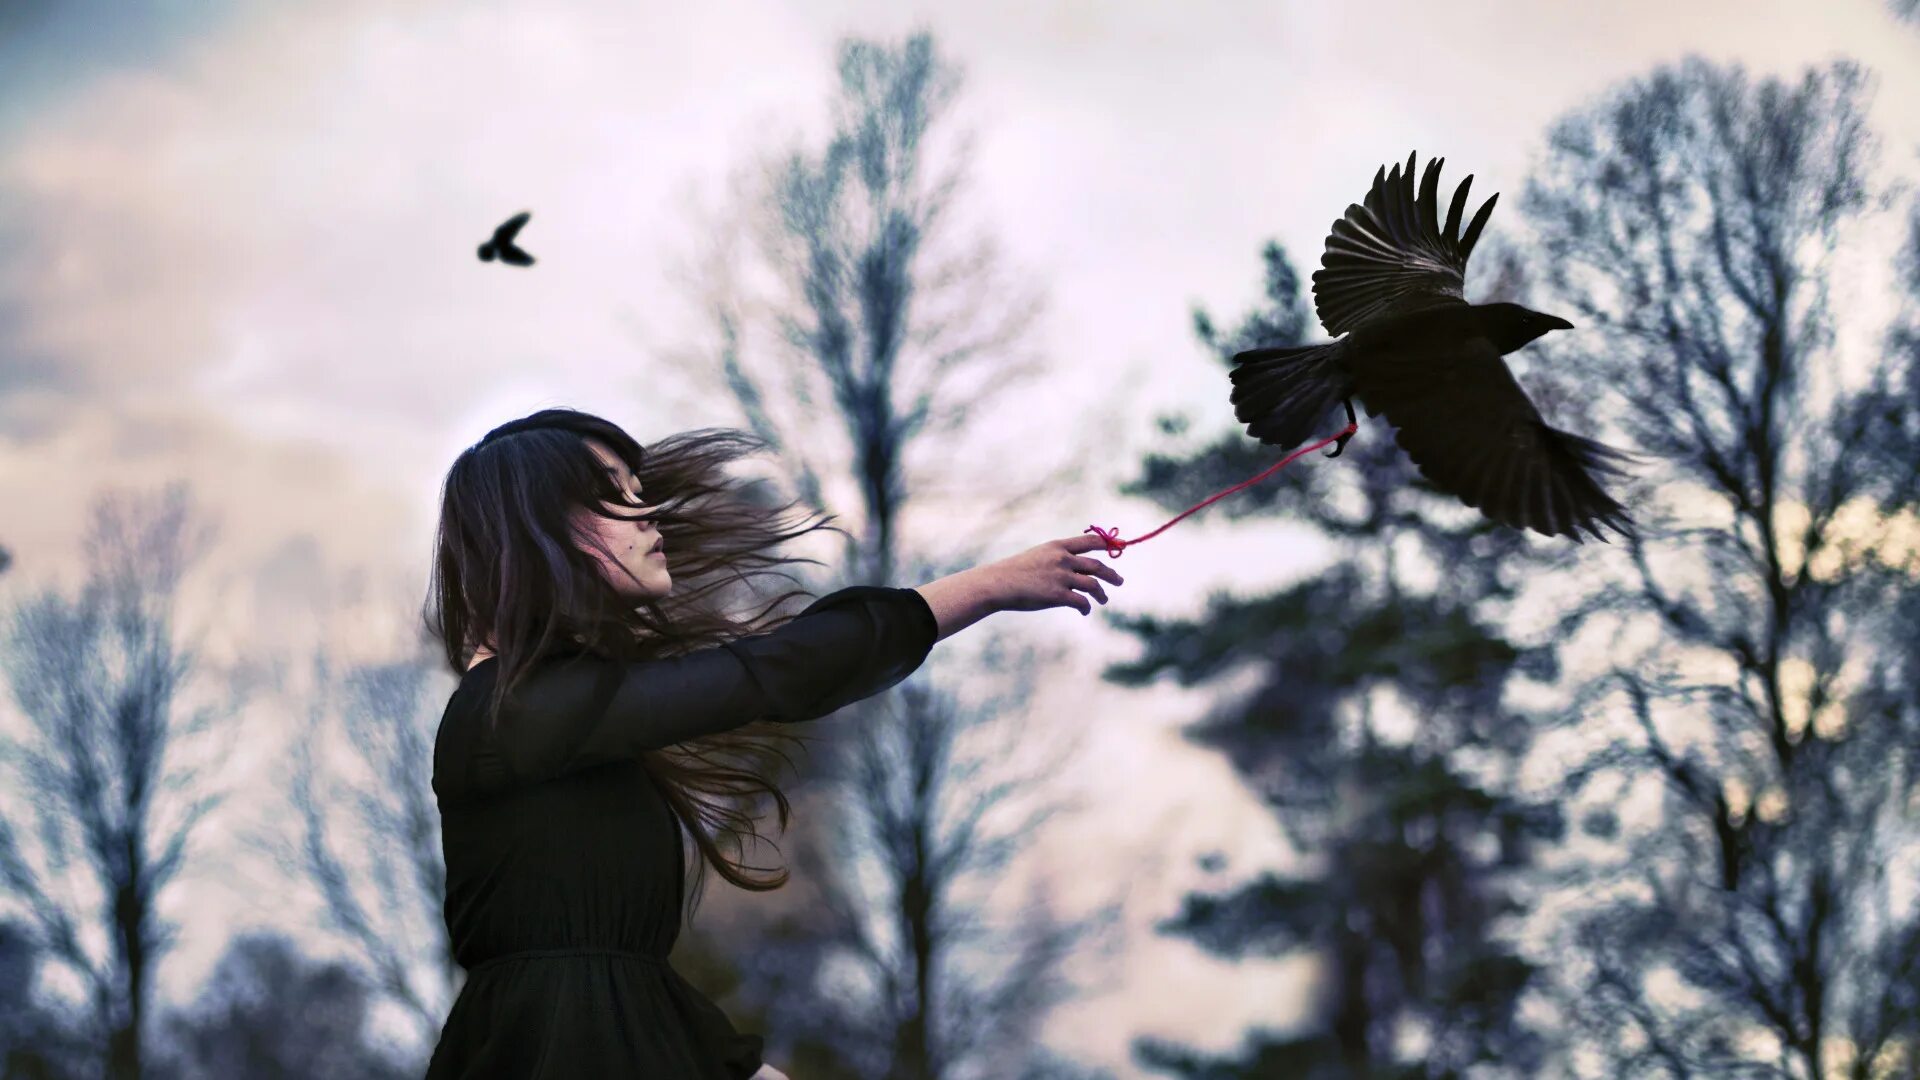 Люди не птицы 1 час. Девушка птица. Девушка отпускает птицу. Девушка выпускает птицу из рук. Отпустить птицу.